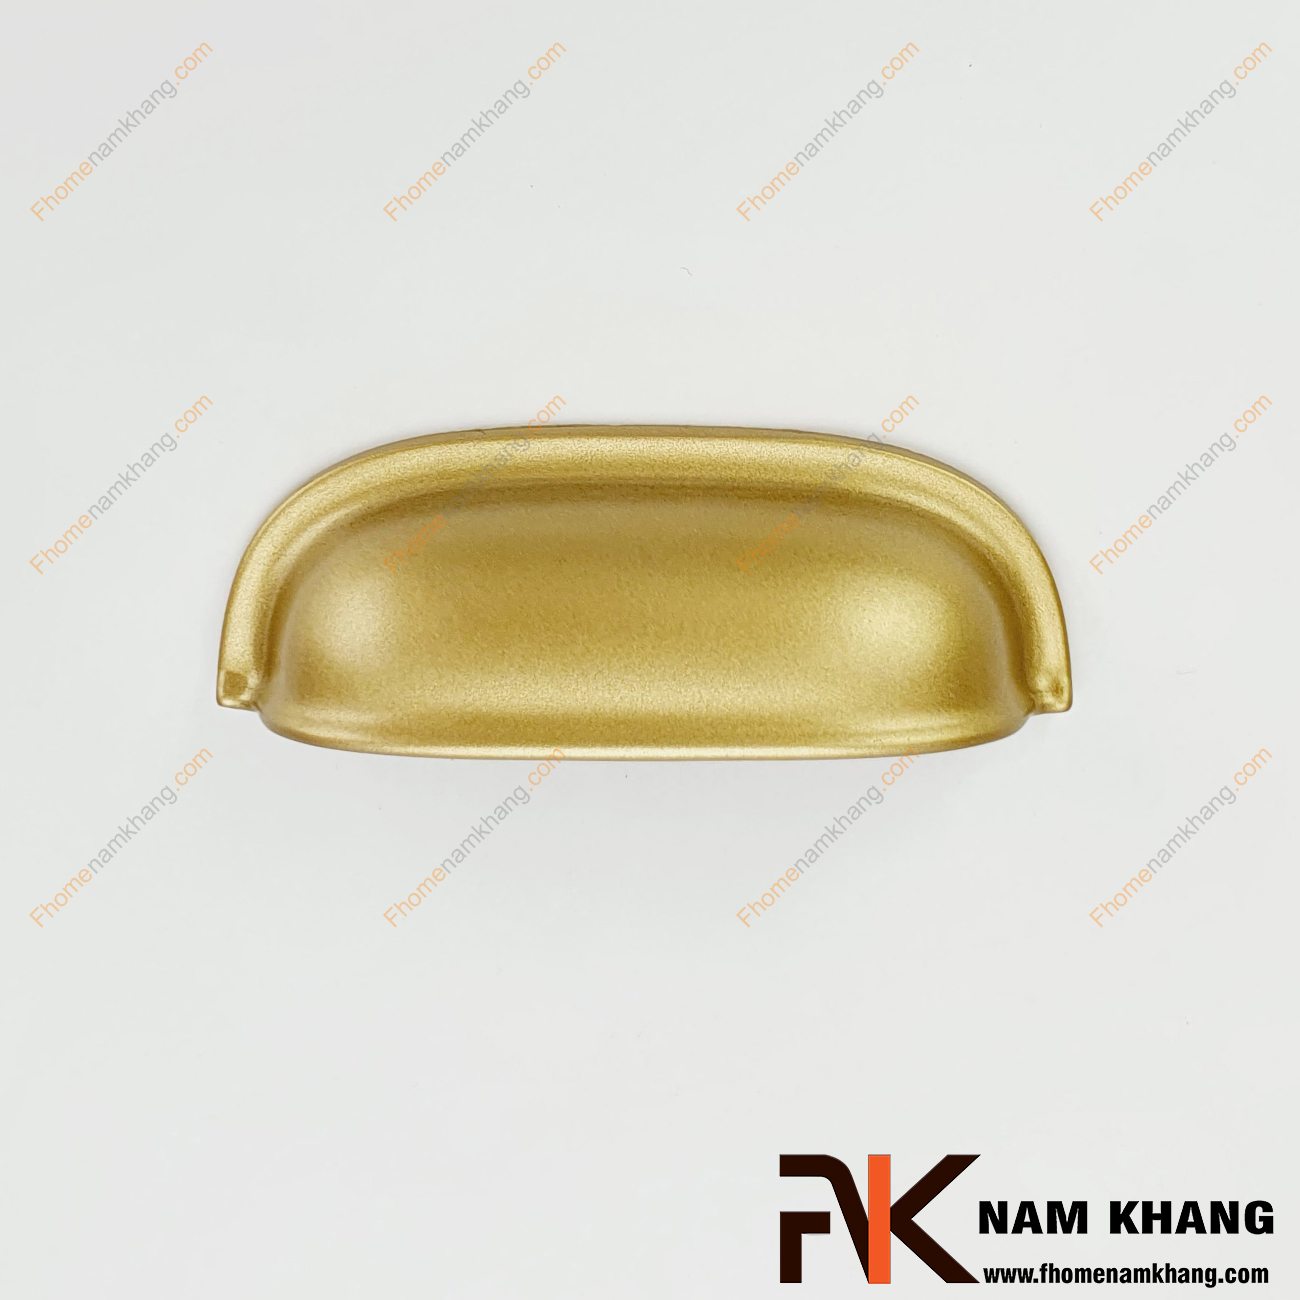 Tay nắm tủ bán nguyệt màu vàng mờ NK309-64VM một sản phẩm tay nắm có thiết kế quen thuộc dạng tổ yến.